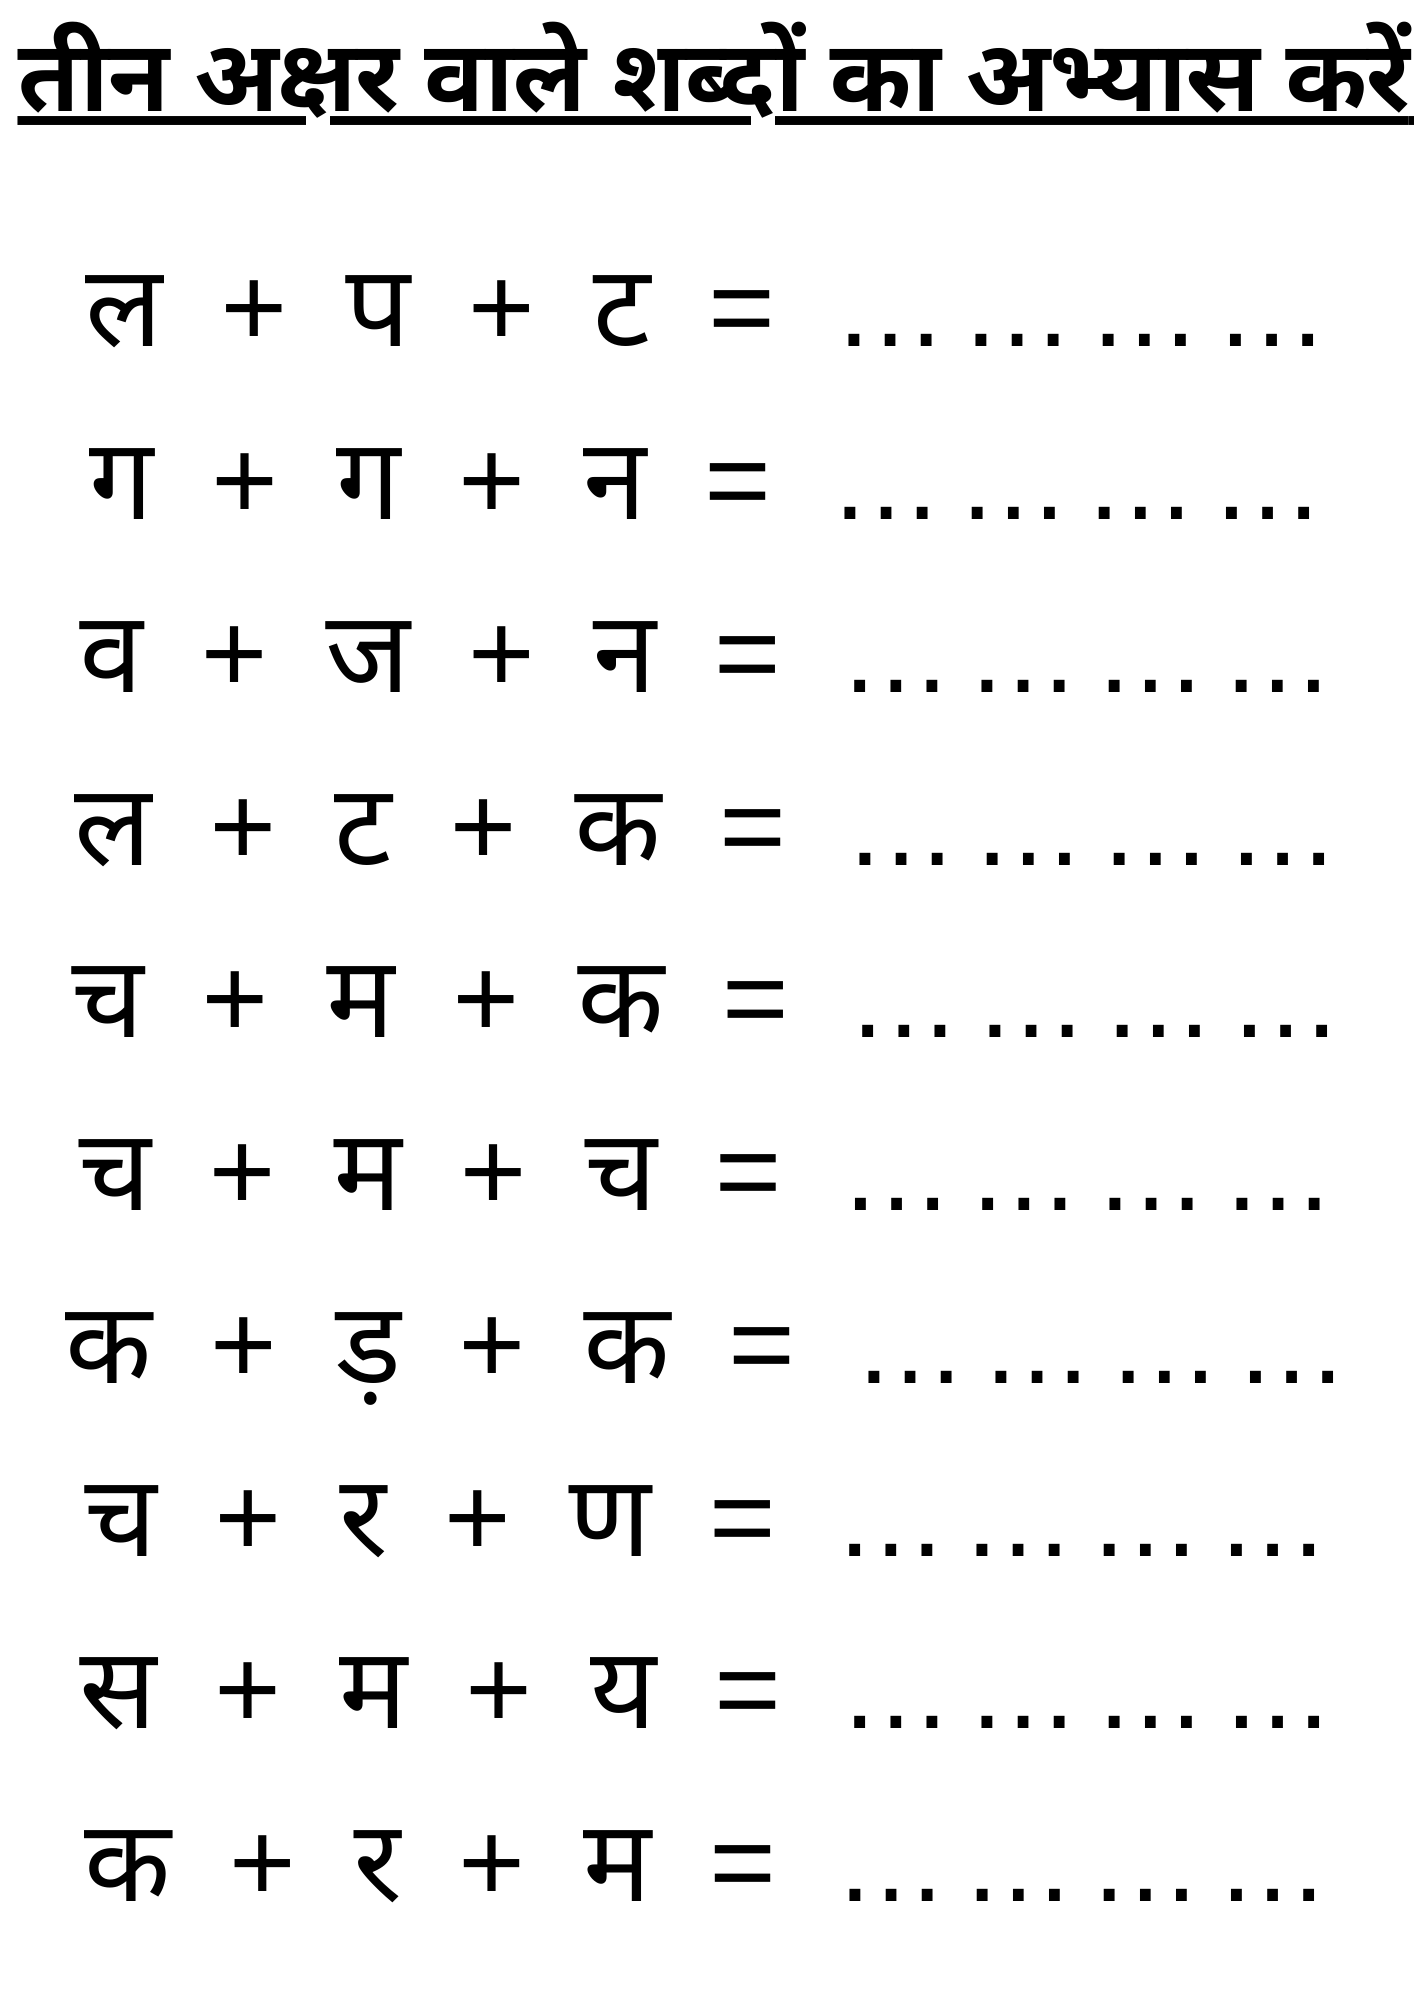 तीन अक्षर वाले शब्दों का अभ्यास करें | 3 Akshar Wale Sabh | Hindi Worksheet